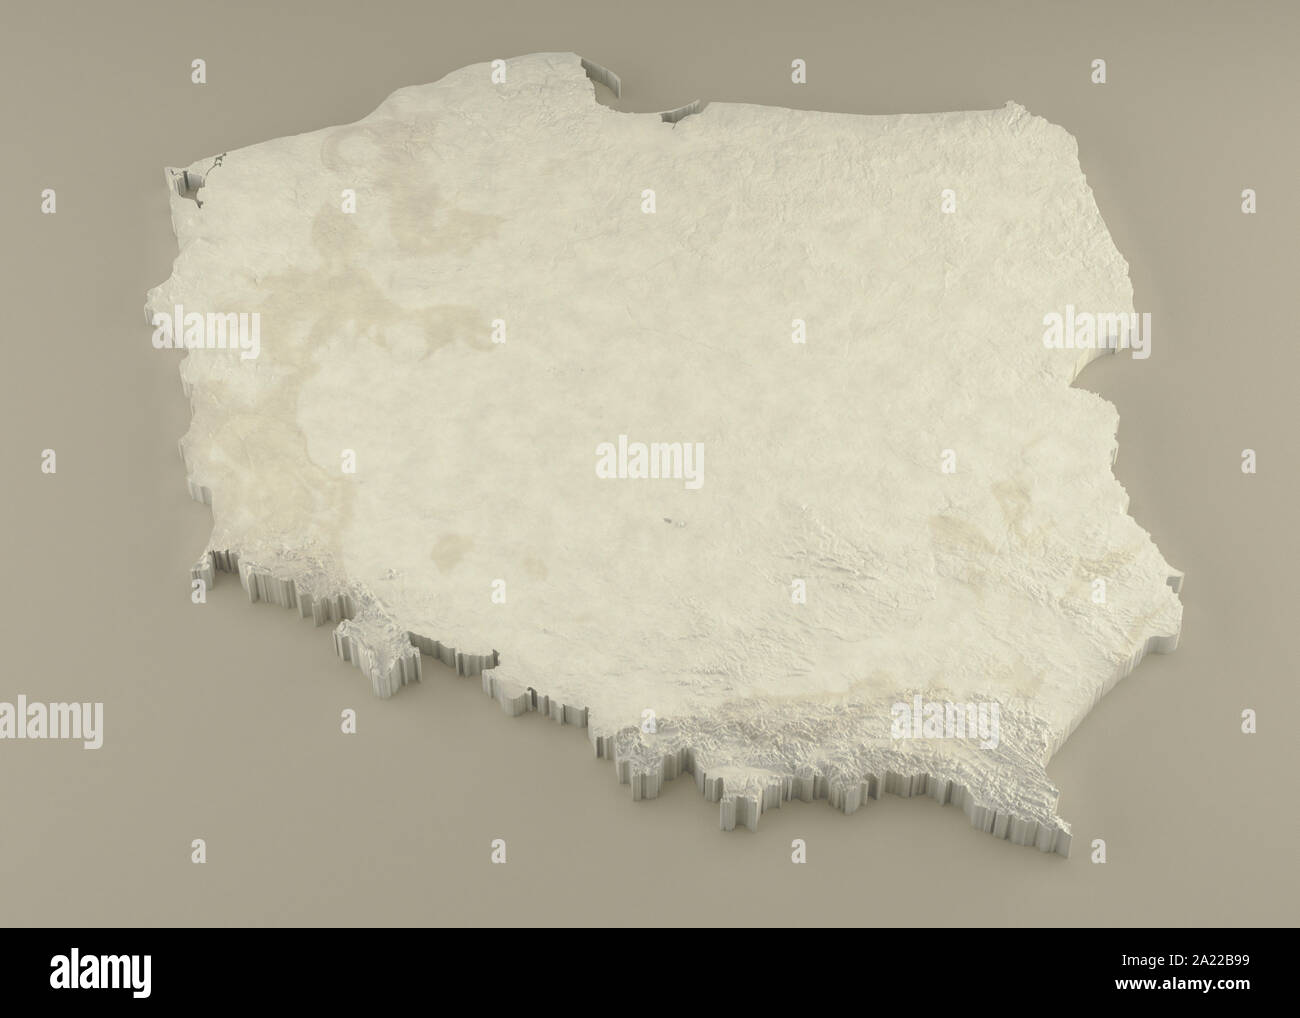 3D extrudé Carte politique de la Pologne avec l'allégement fiscal qu'en sculpture sur un fond beige lumière Banque D'Images